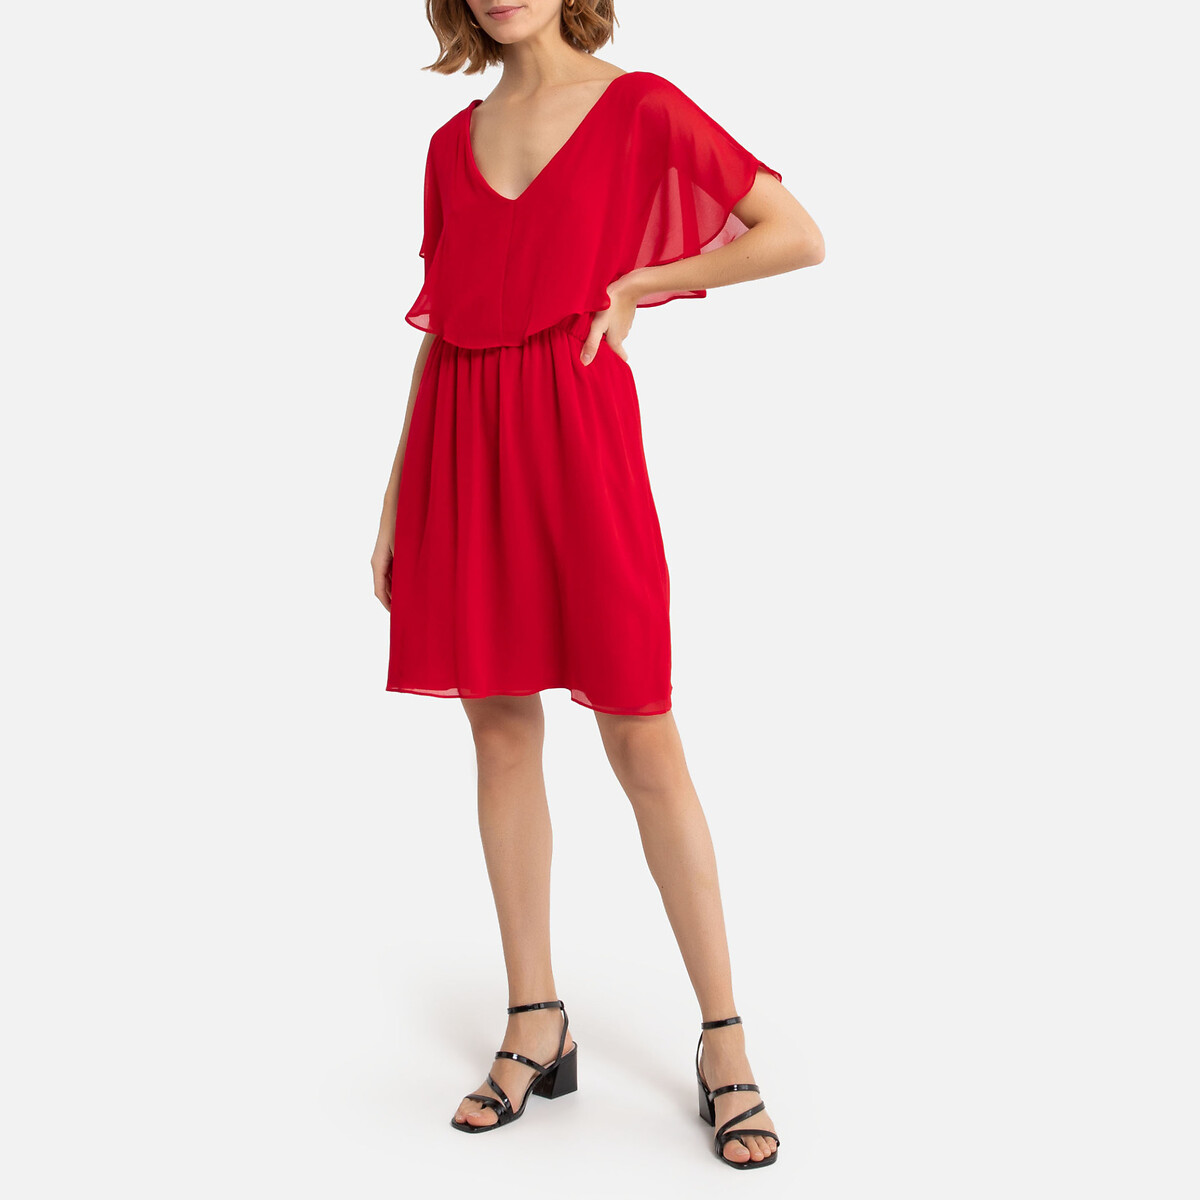 Платье LaRedoute Укороченное с V-образным вырезом 42 (FR) - 48 (RUS) красный, размер 42 (FR) - 48 (RUS) Укороченное с V-образным вырезом 42 (FR) - 48 (RUS) красный - фото 2